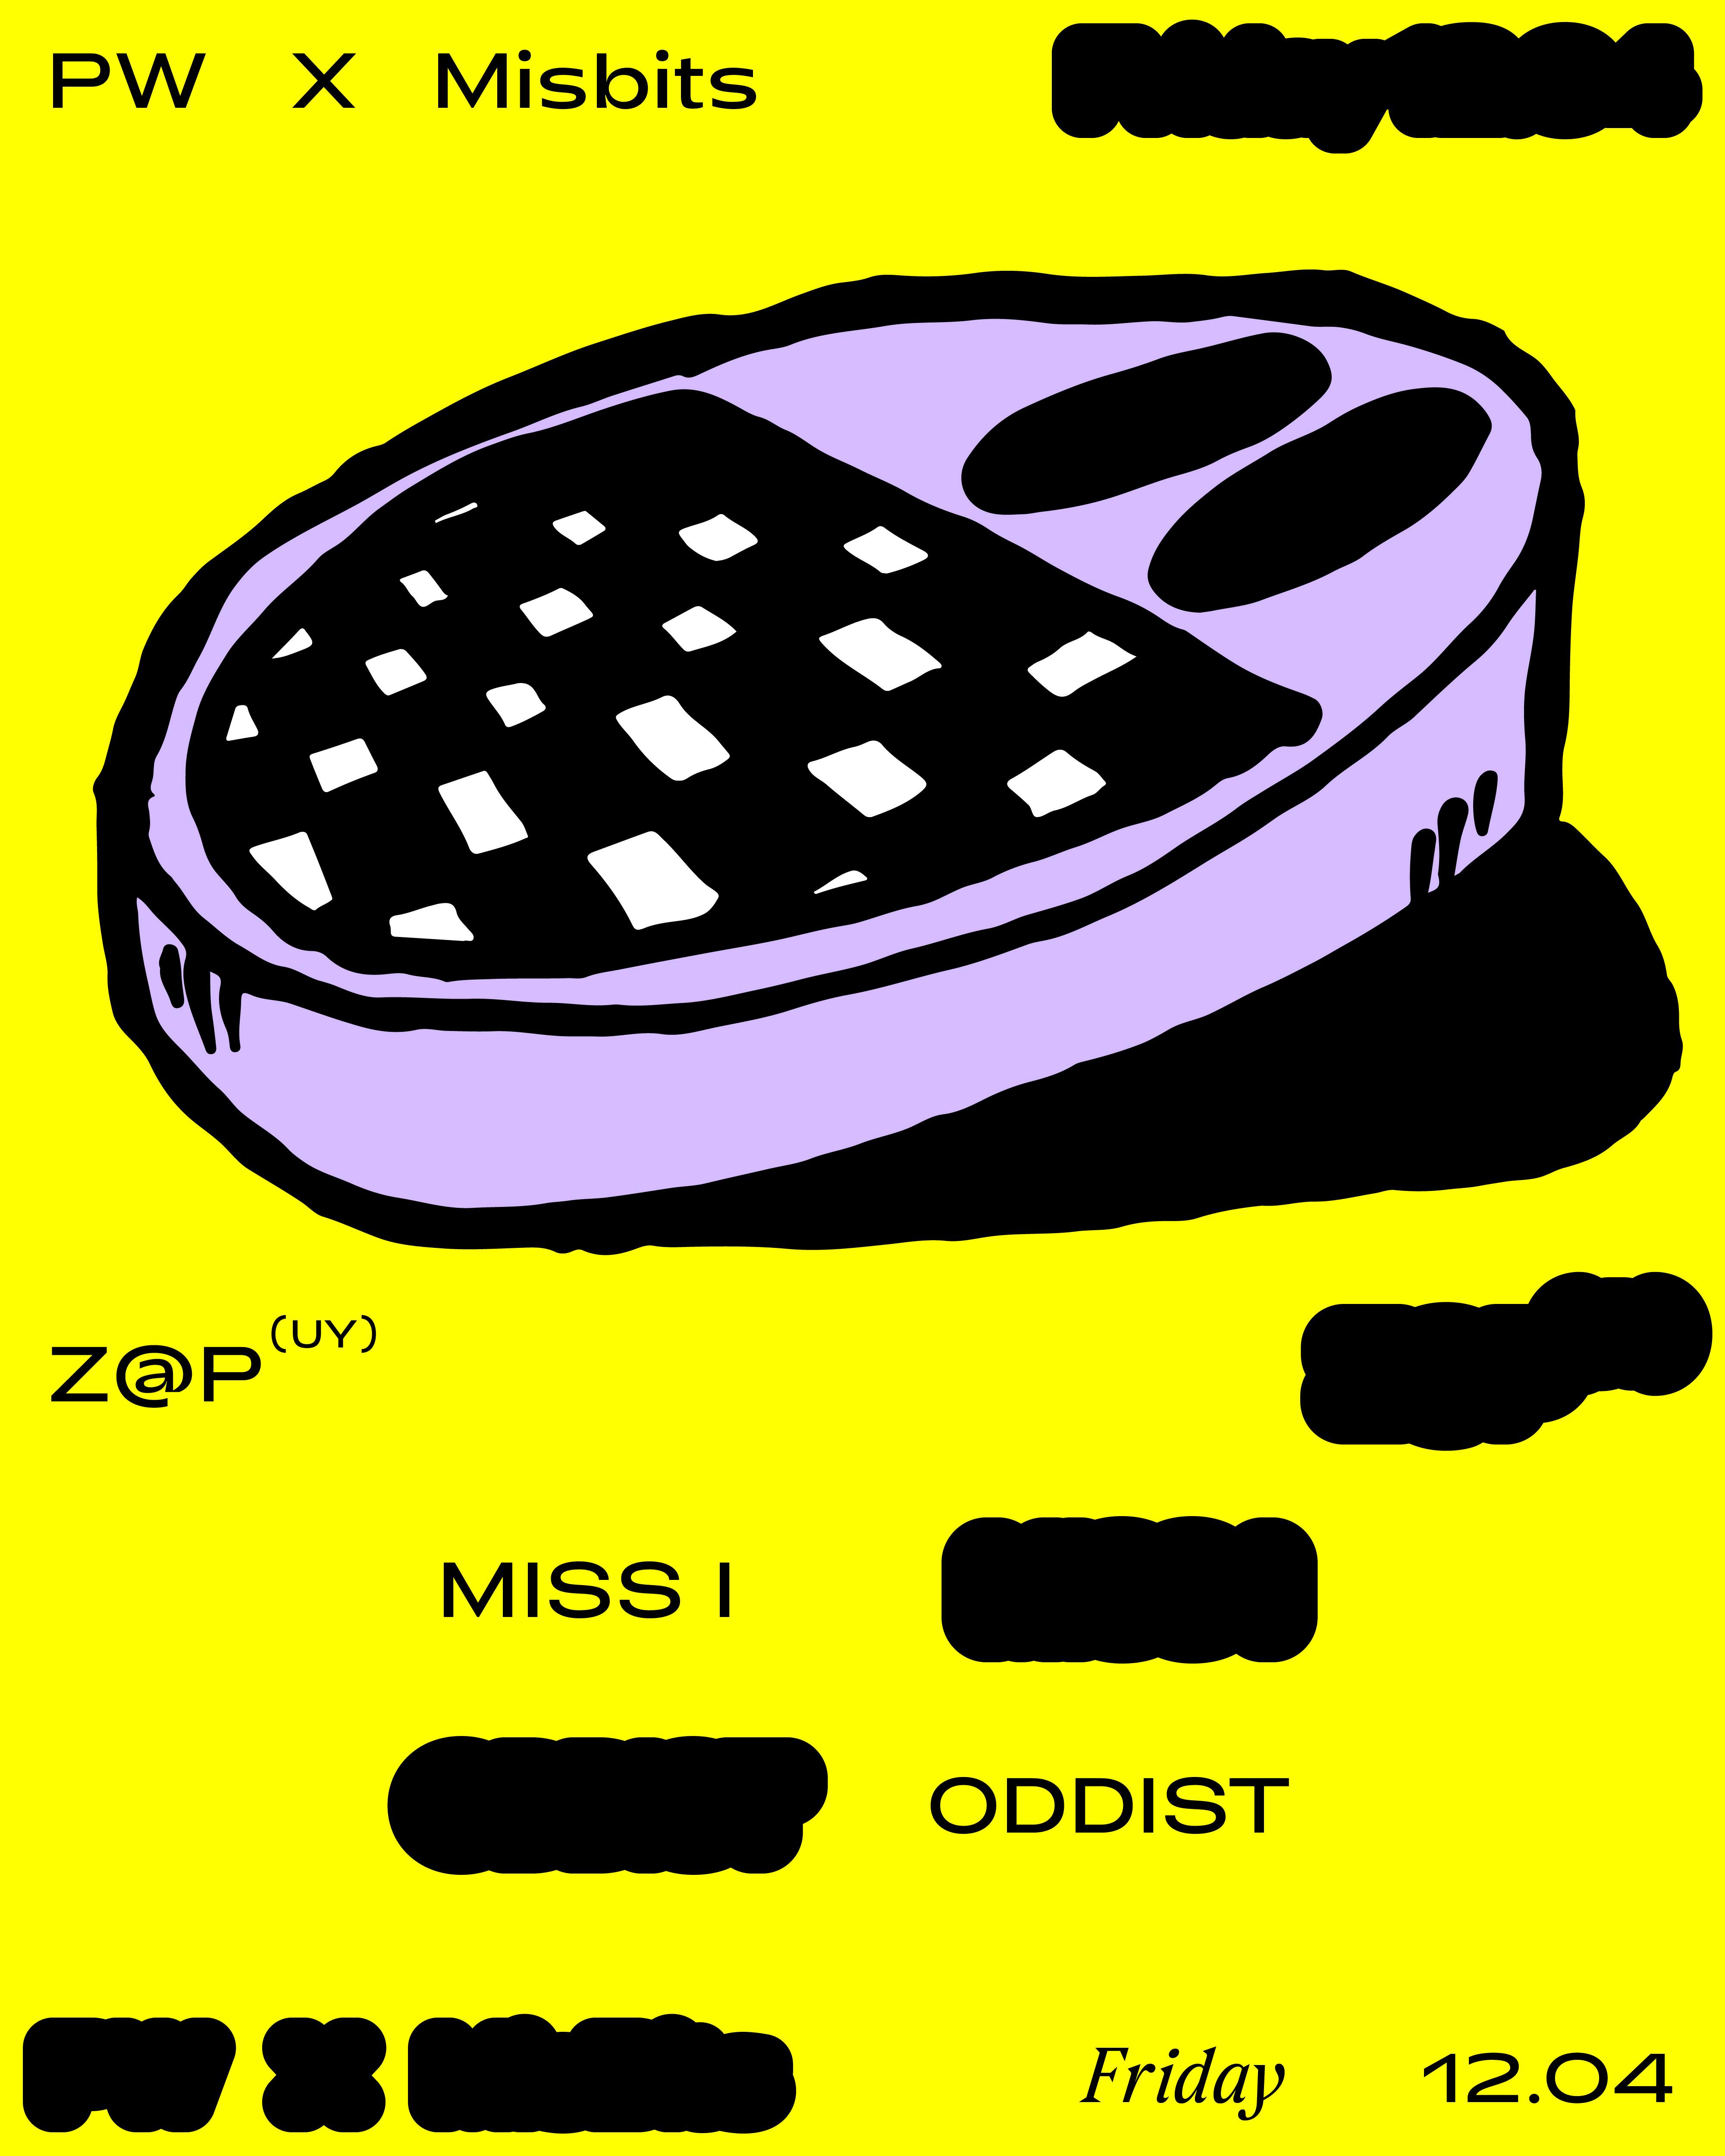 PW x Misbits • Z@p, Miss I, oddist - フライヤー表